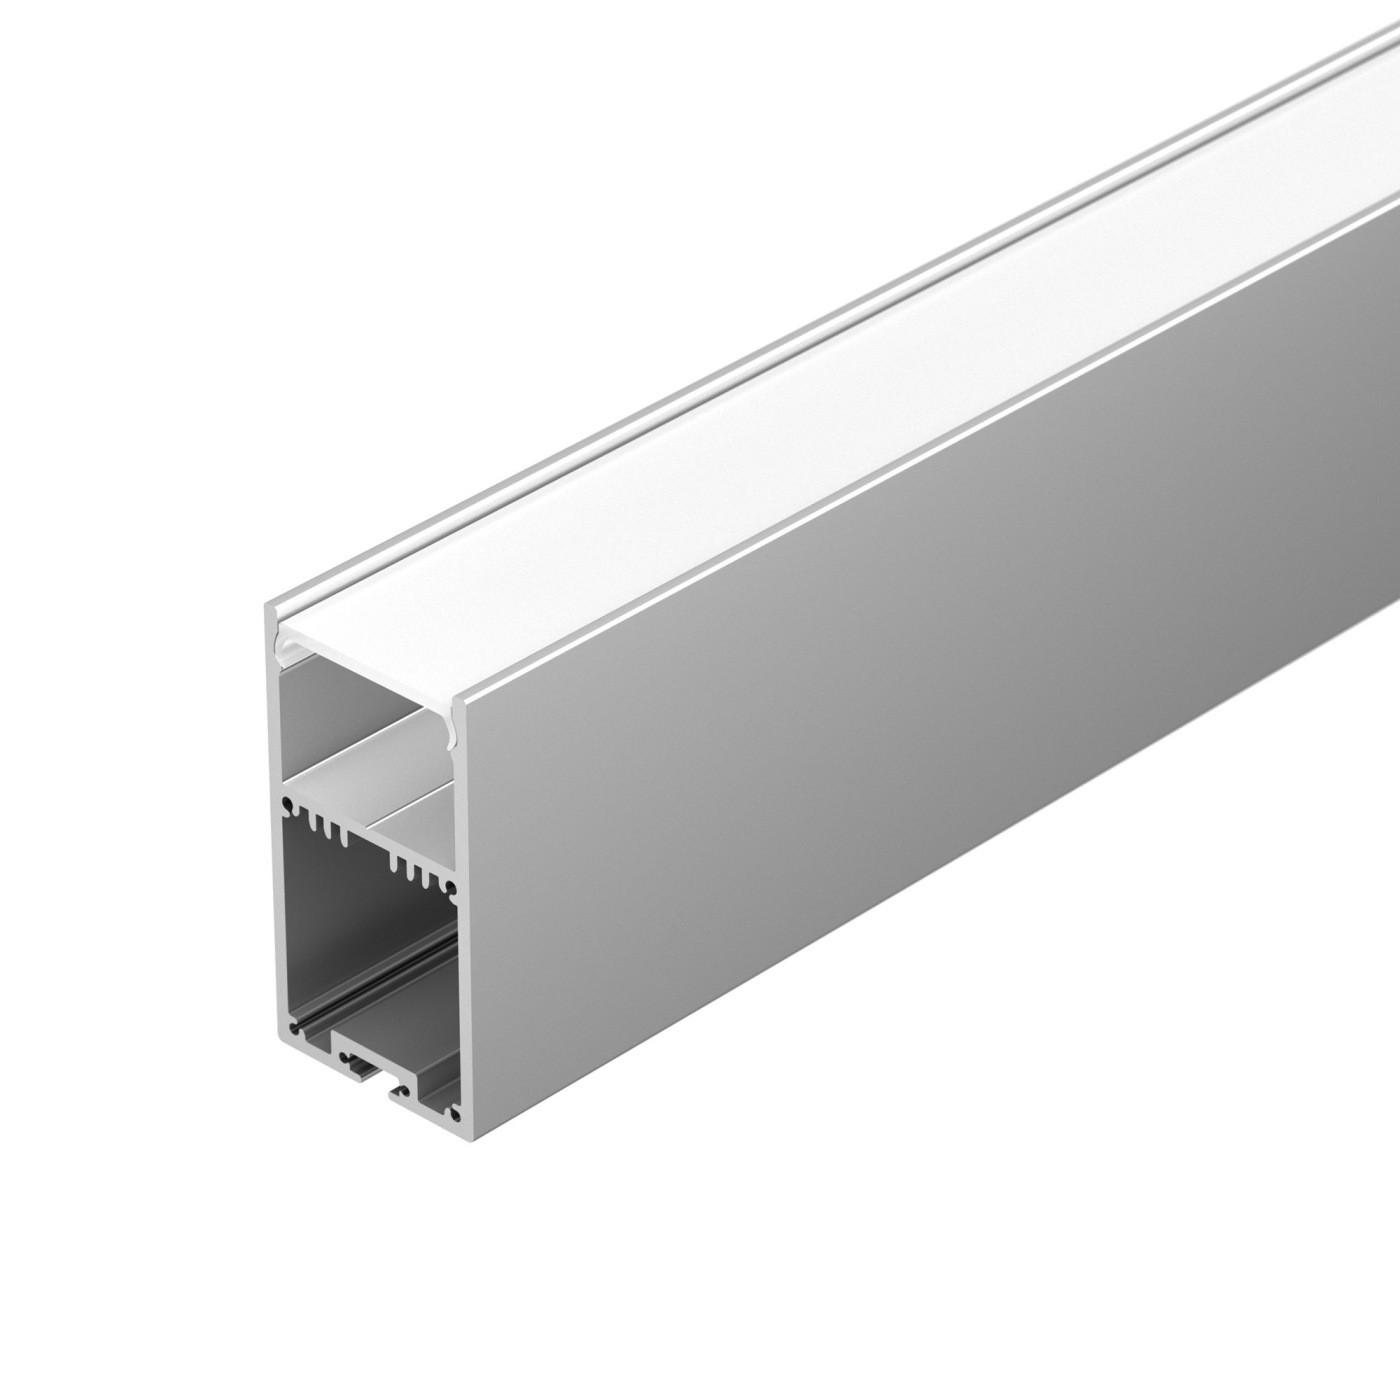 Профиль с экраном SL-LINE-3667-2500 ANOD+OPAL профиль алюминиевый накладной подвесной с отсеком для бп серебро cab267